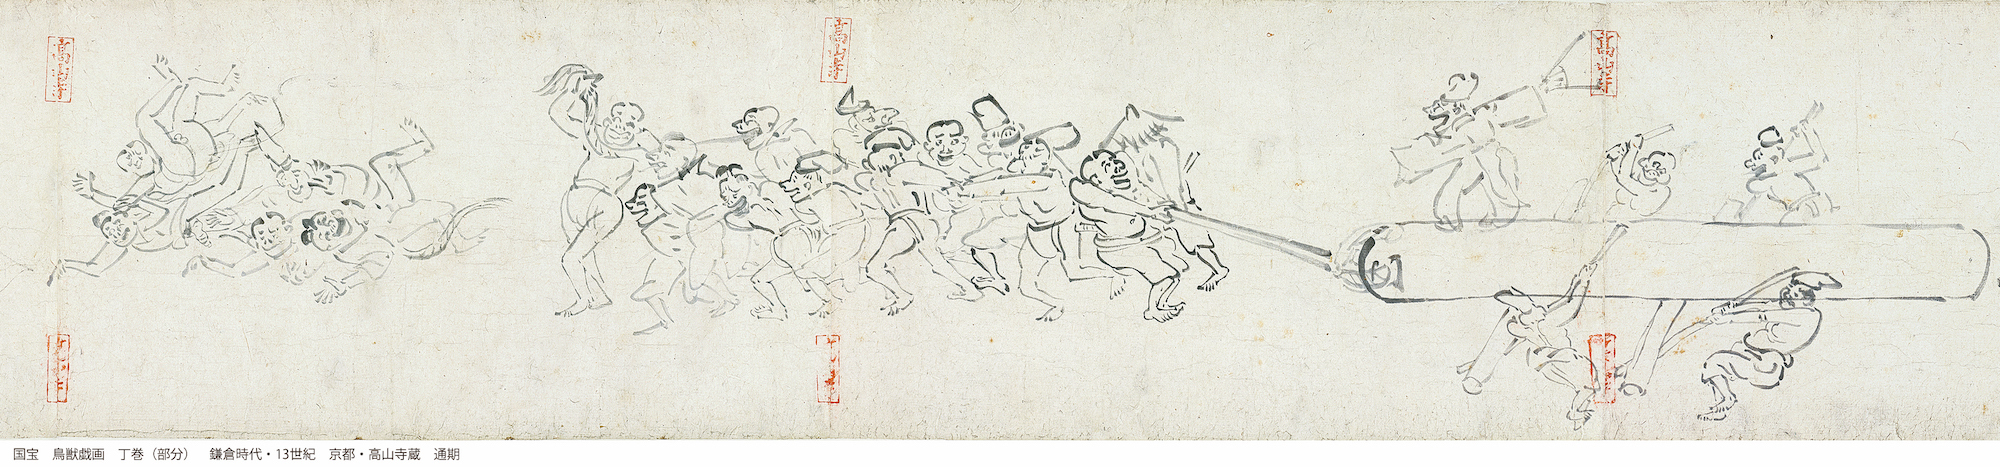 国宝　鳥獣戯画　丁巻（部分）　鎌倉時代　13世紀　京都・高山寺　通期